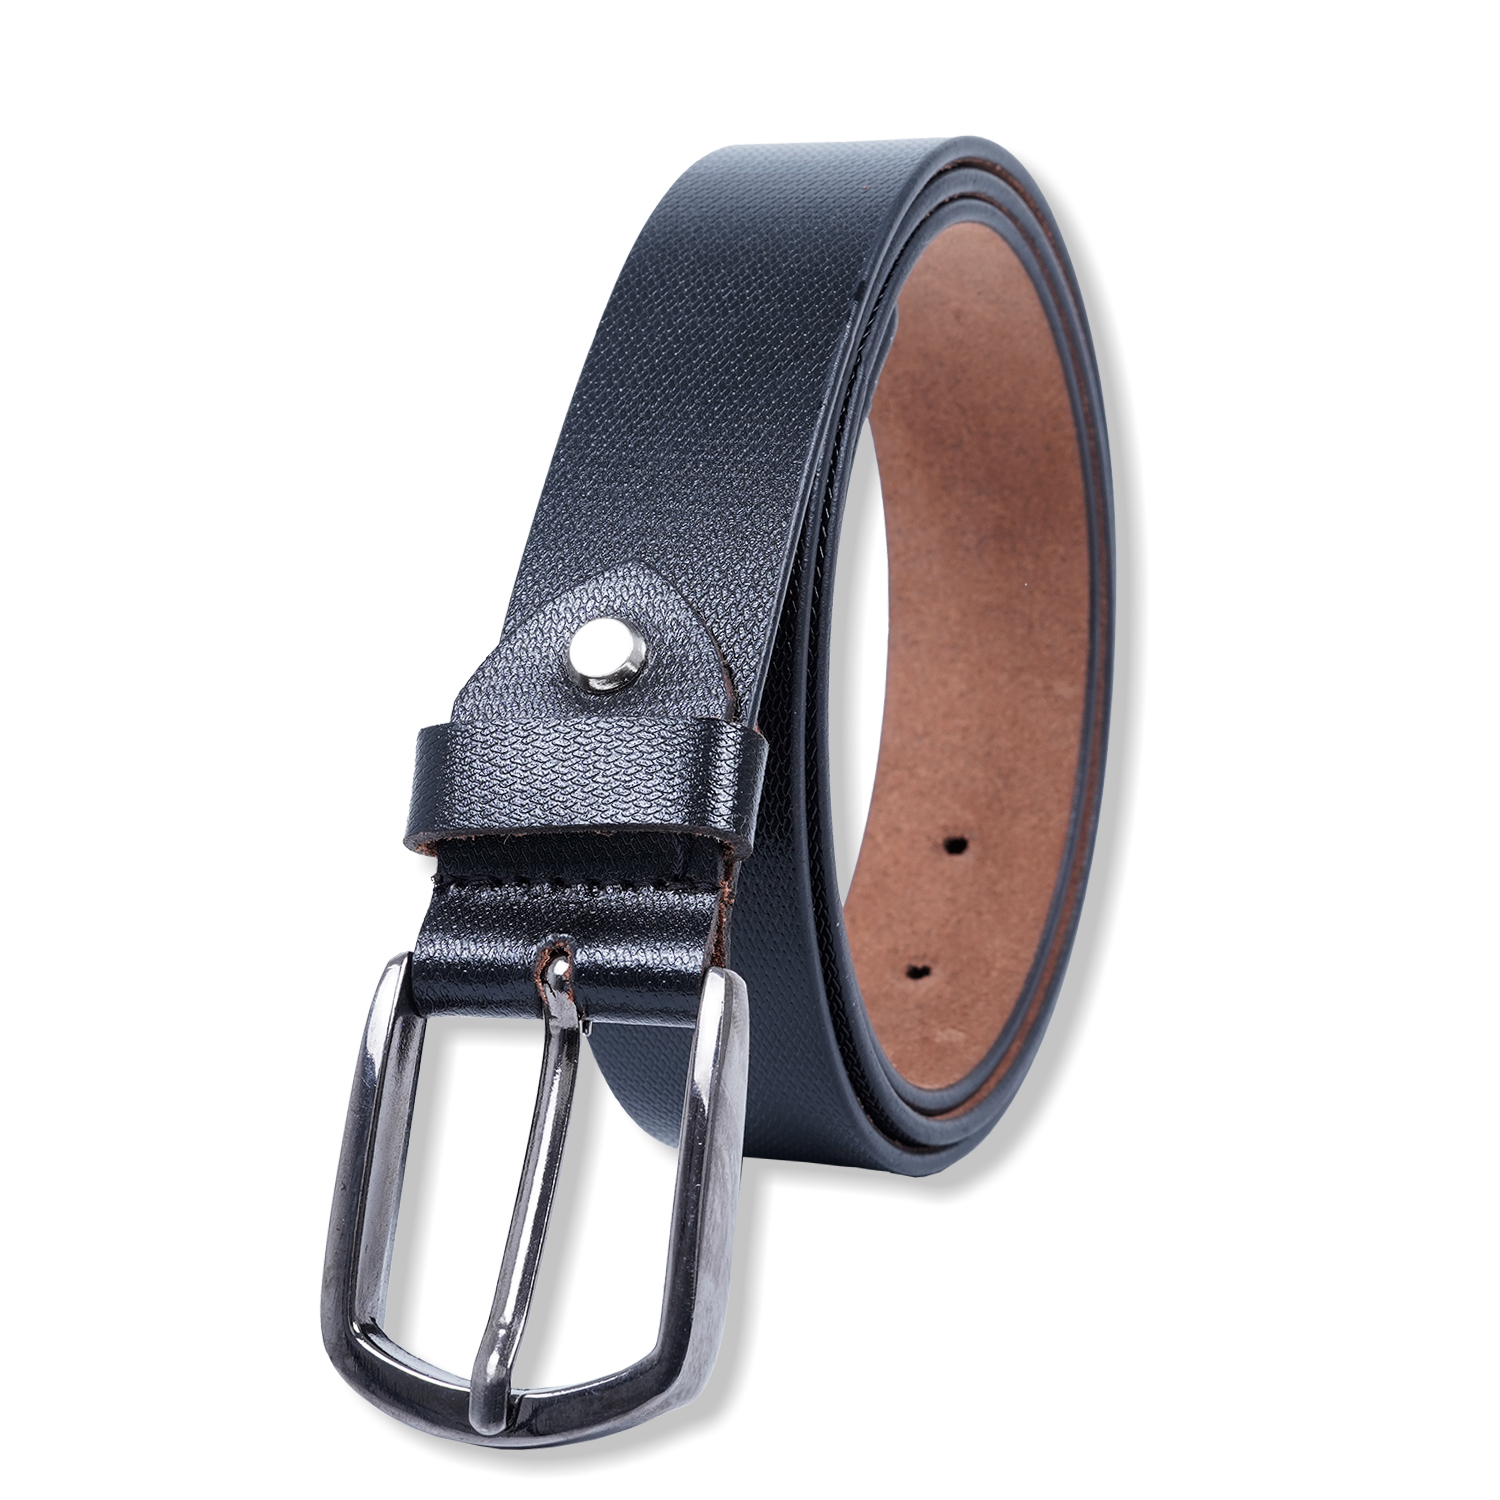  Genuine Leather belt |Formal Belt | Black-asset-269